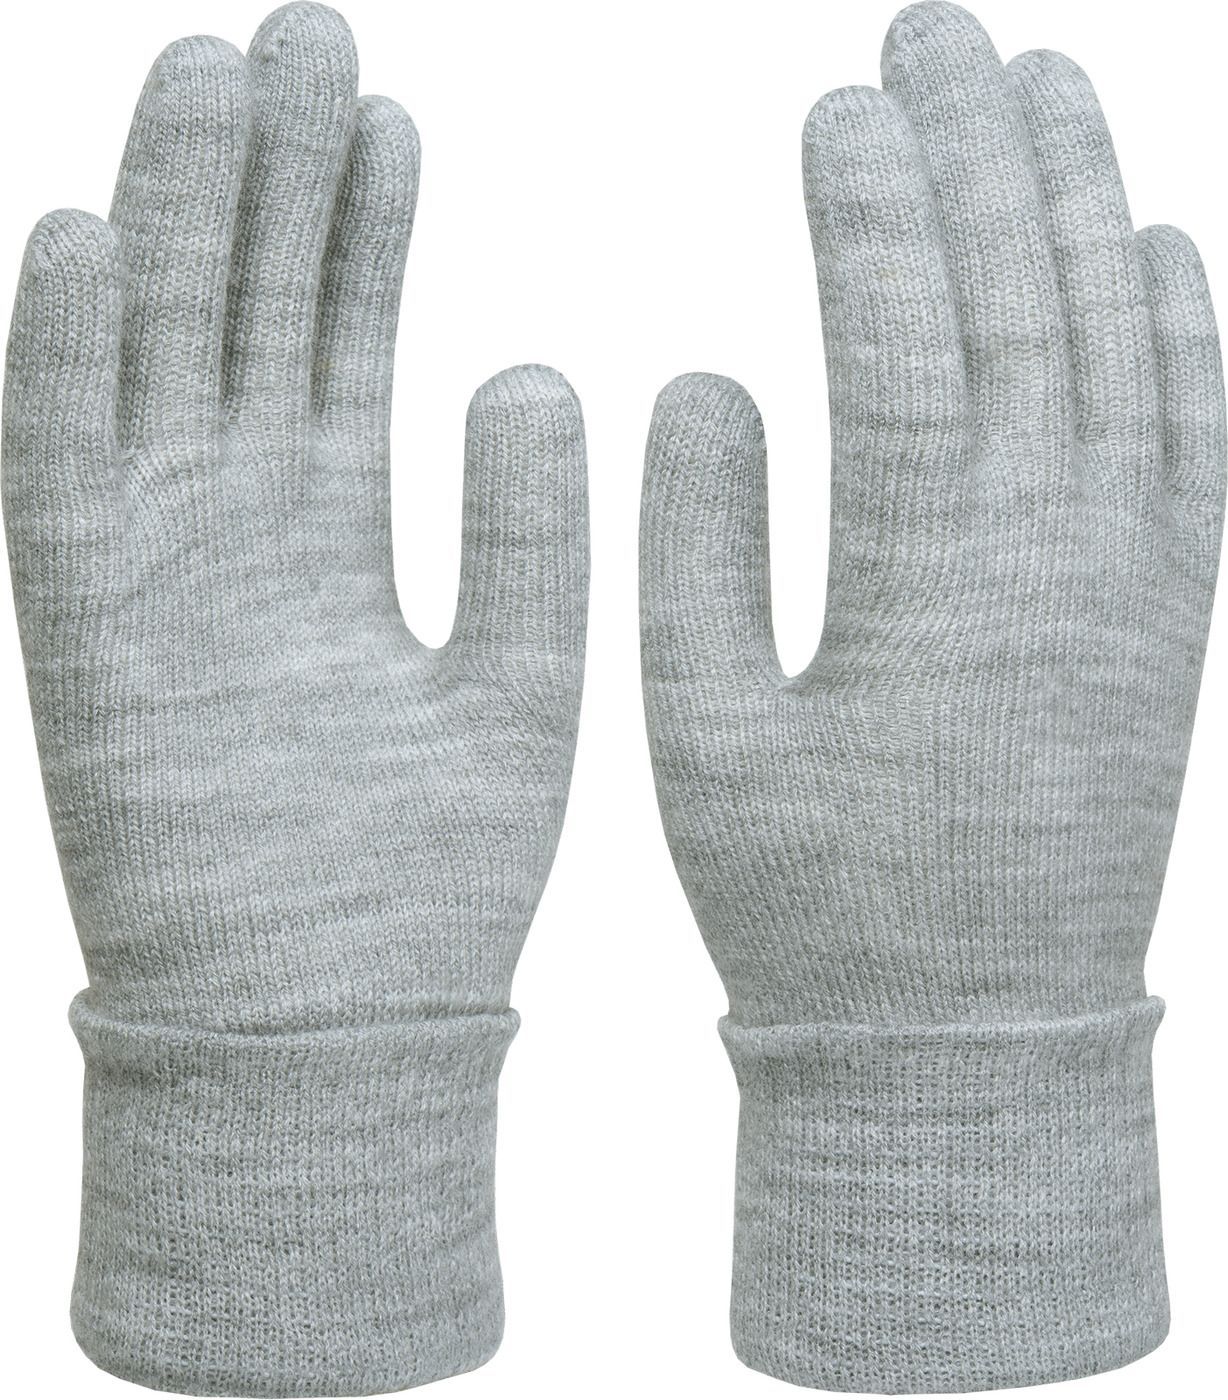 Перчатки СИБИРСКИЕ женские, одинарные, светло-серый, (5.1.1-20.1.0.201-202) – 1